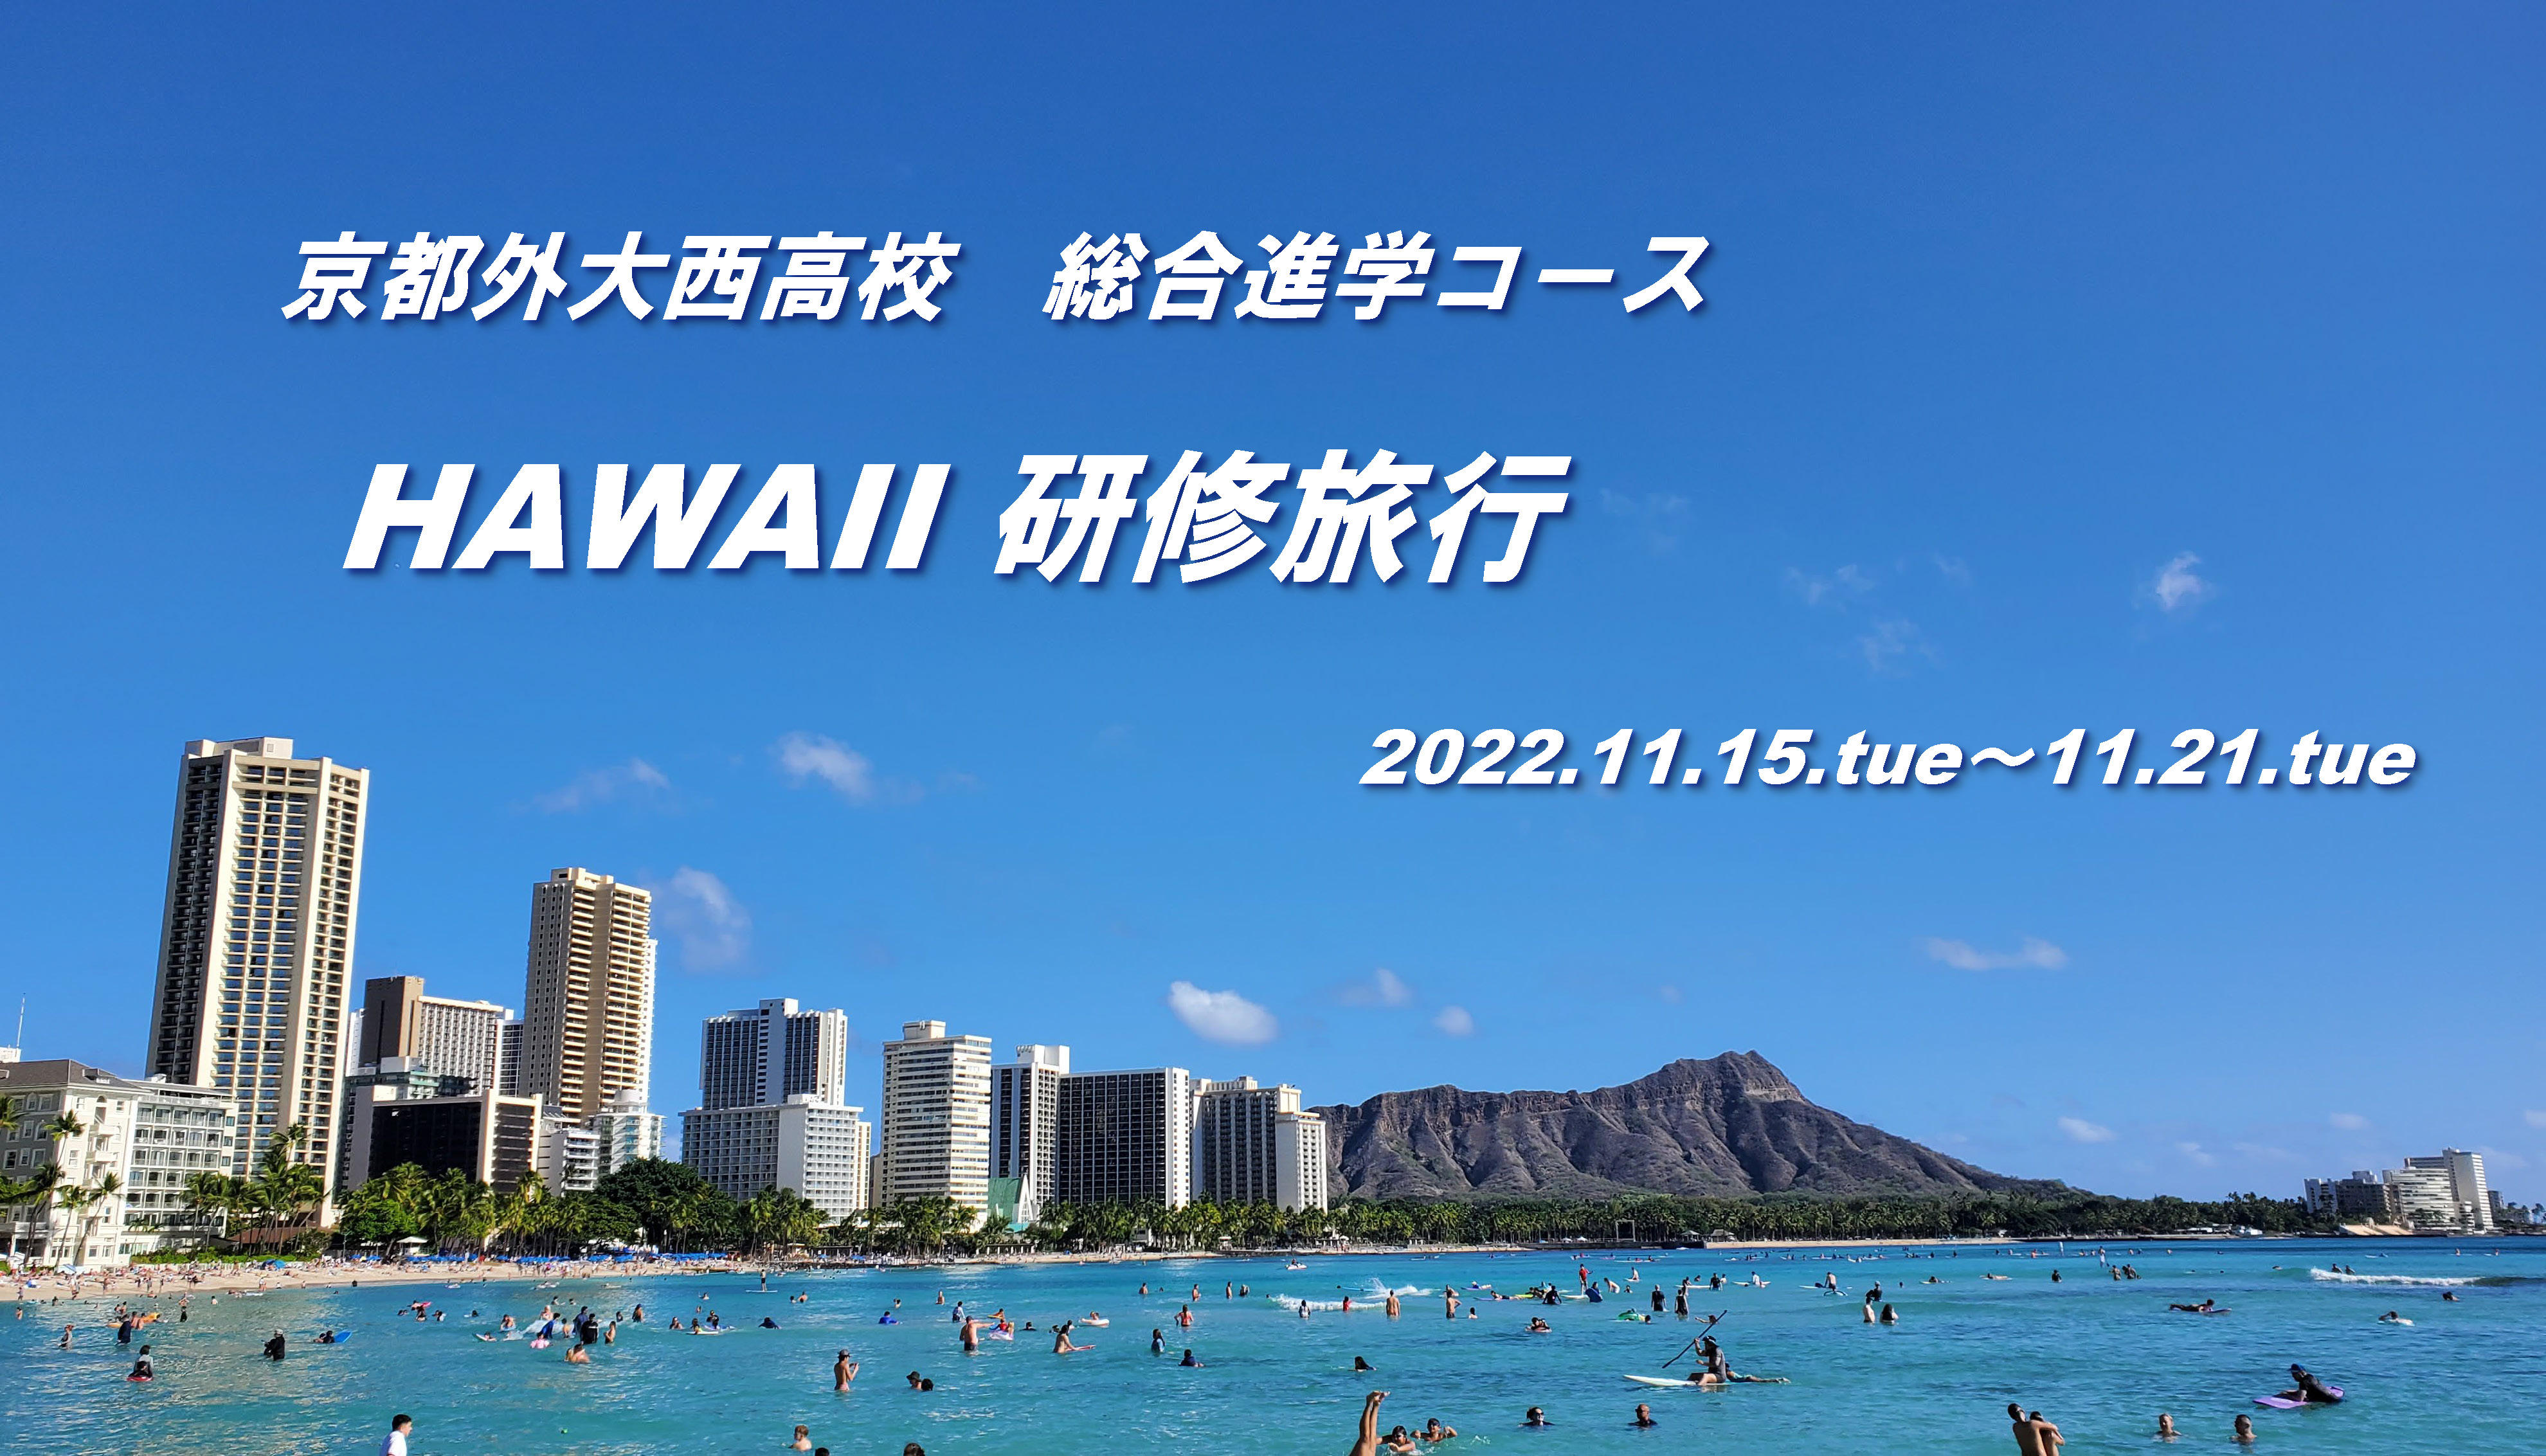 2022 ハワイ研修旅行 表紙.jpg